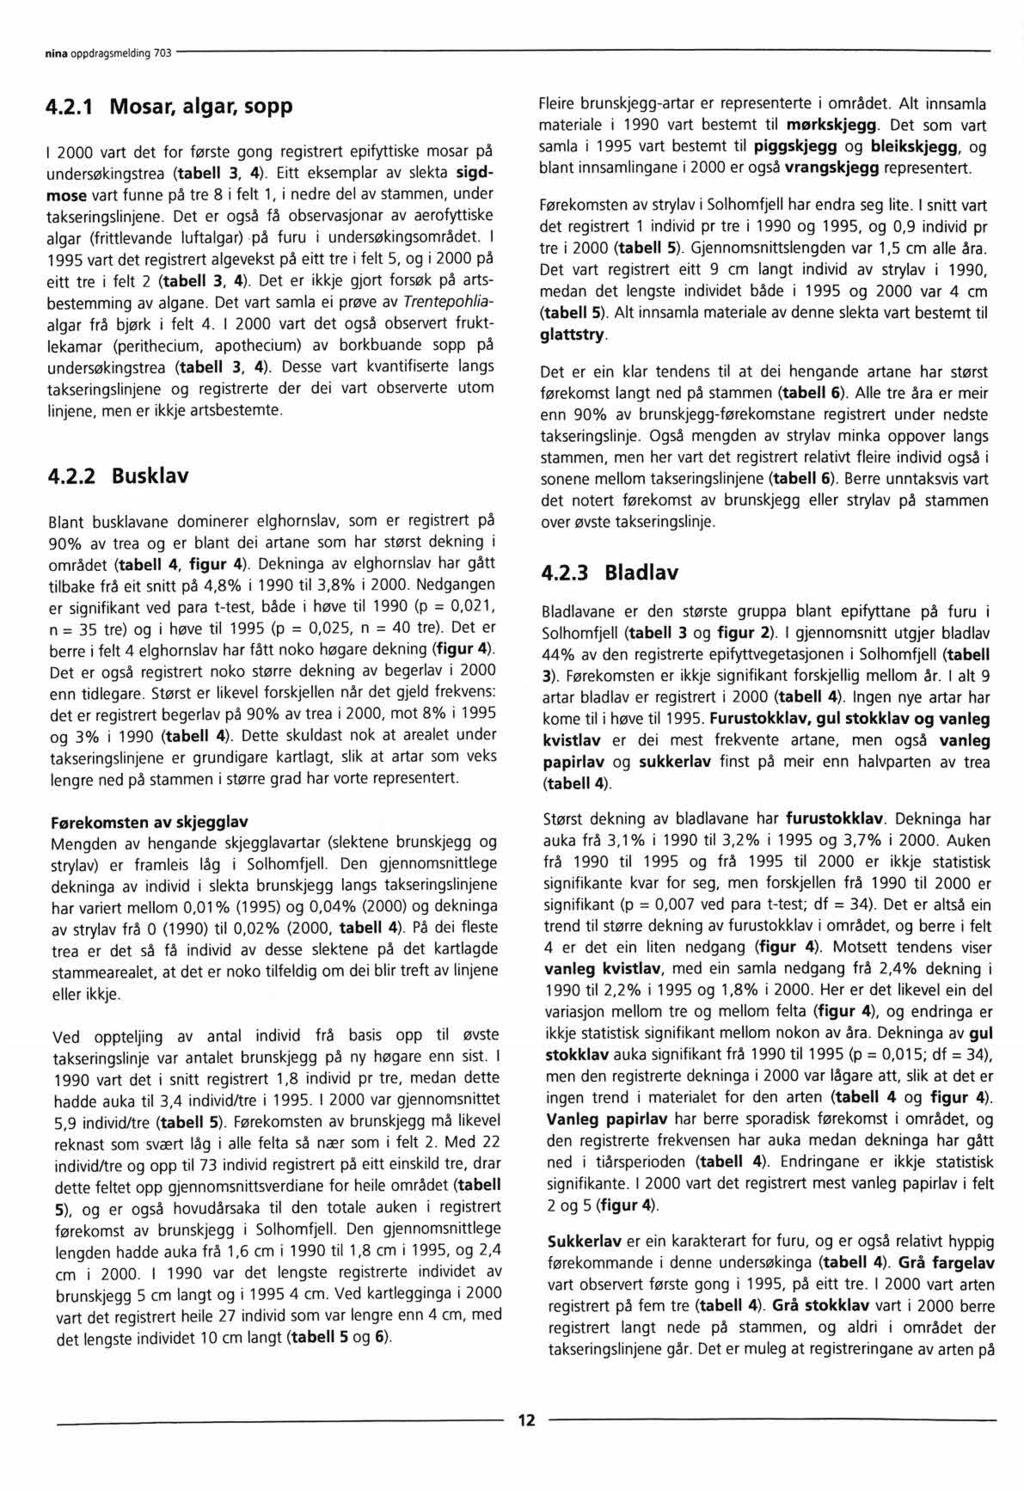 4.2.1 Mosar, algar, sopp I 2000 vart det for første gong registrert epifyttiske mosar på undersøkingstrea (tabell 3, 4).